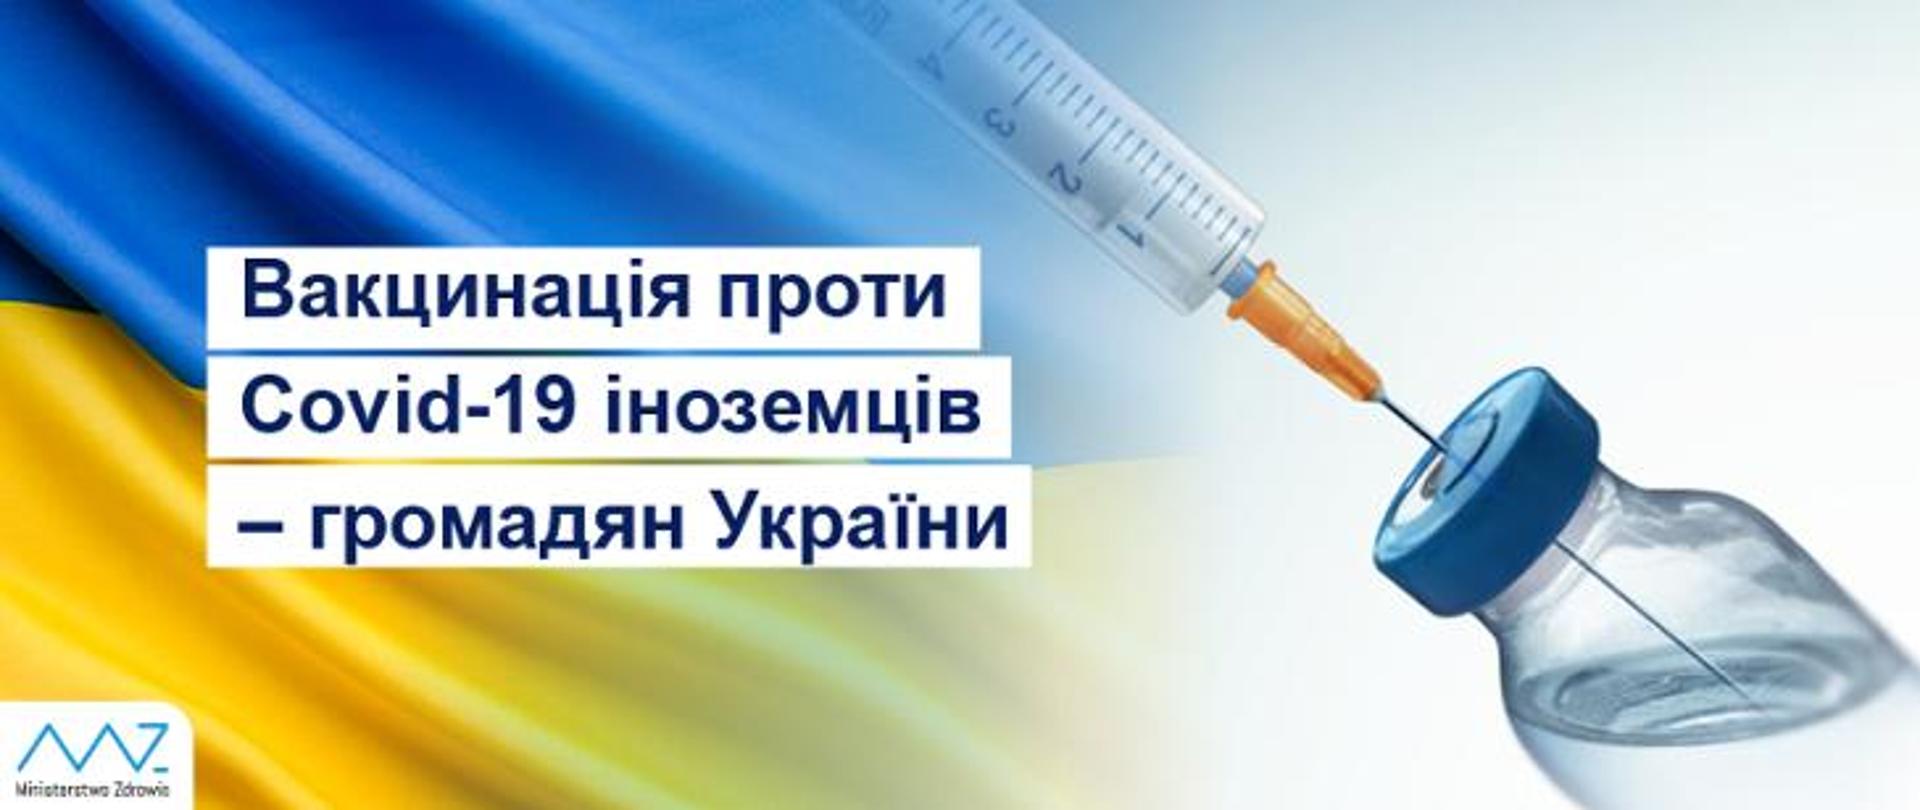 UKR-_szczepienia_cudzoziemcy-ukraina